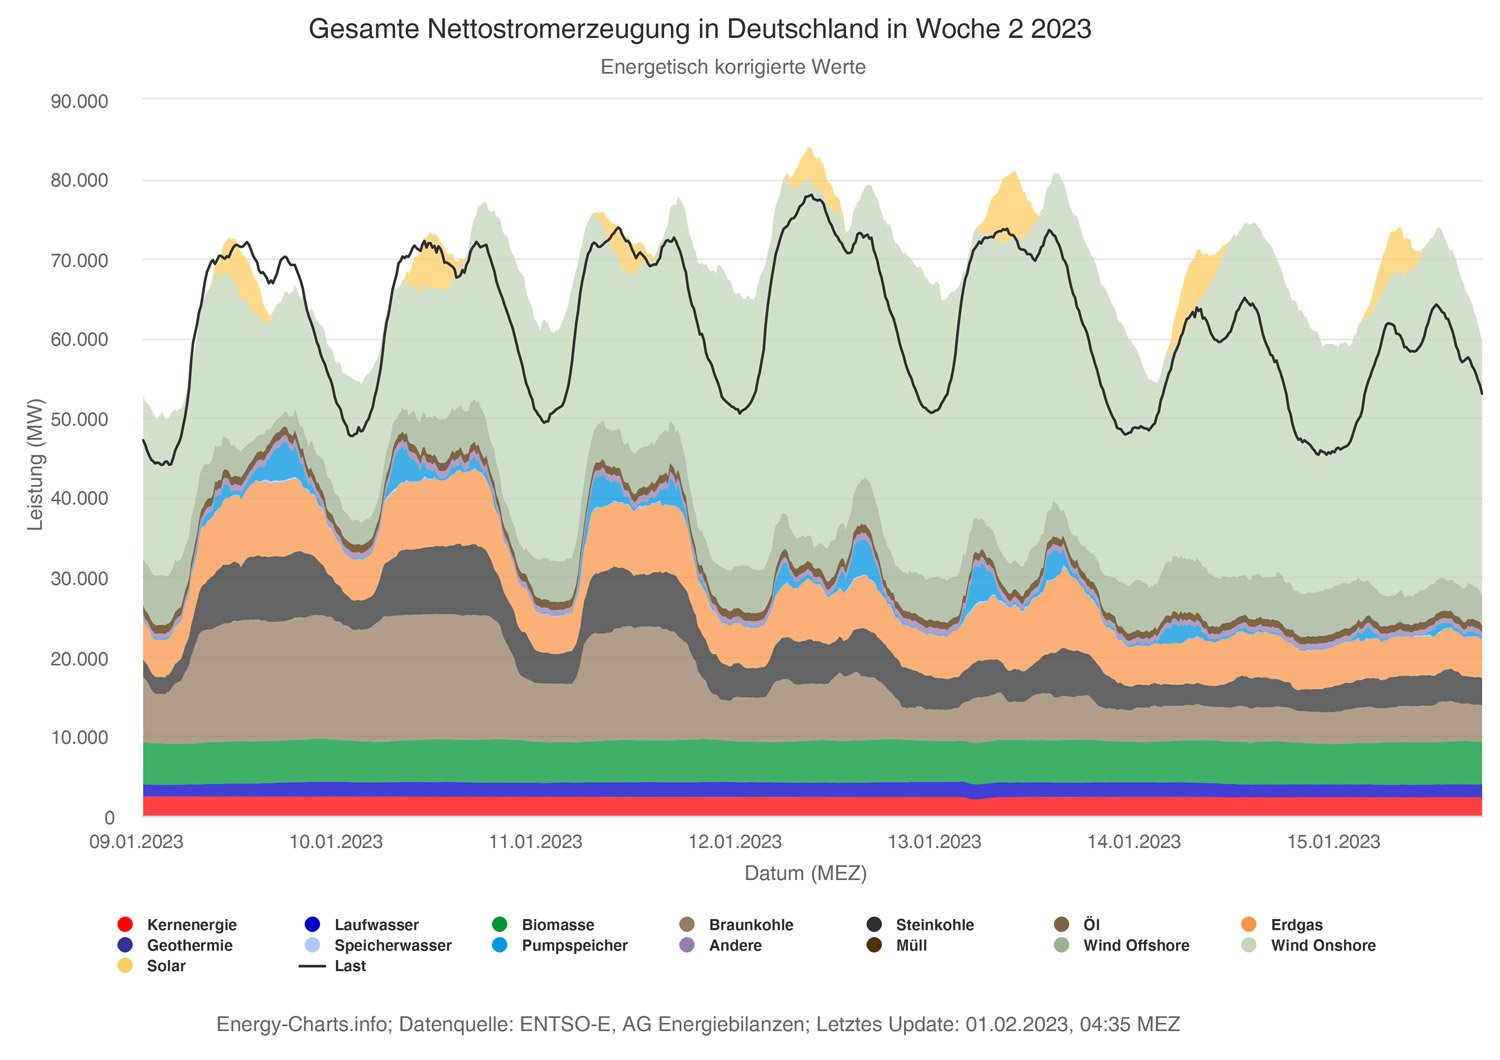 Falscher-Alarm-Mag57-energy-charts_Gesamte_Nettostromerzeugung_in_Deutschland_in_Woche_2_2023.jpg